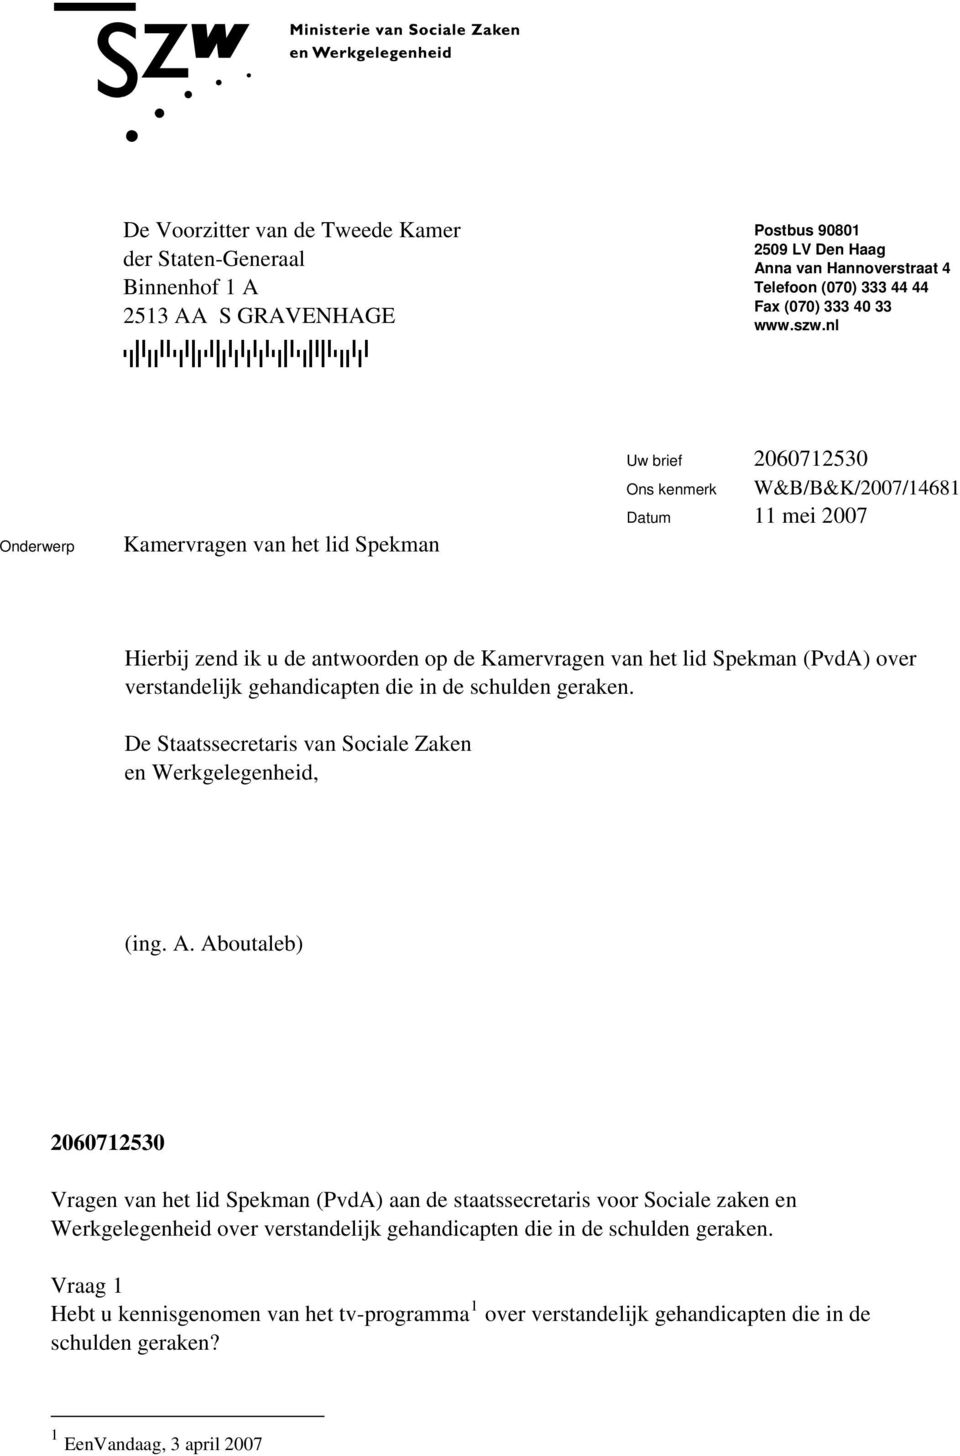 nl Onderwerp Kamervragen van het lid Spekman Uw brief 2060712530 Ons kenmerk Datum 11 mei 2007 Hierbij zend ik u de antwoorden op de Kamervragen van het lid Spekman (PvdA) over verstandelijk